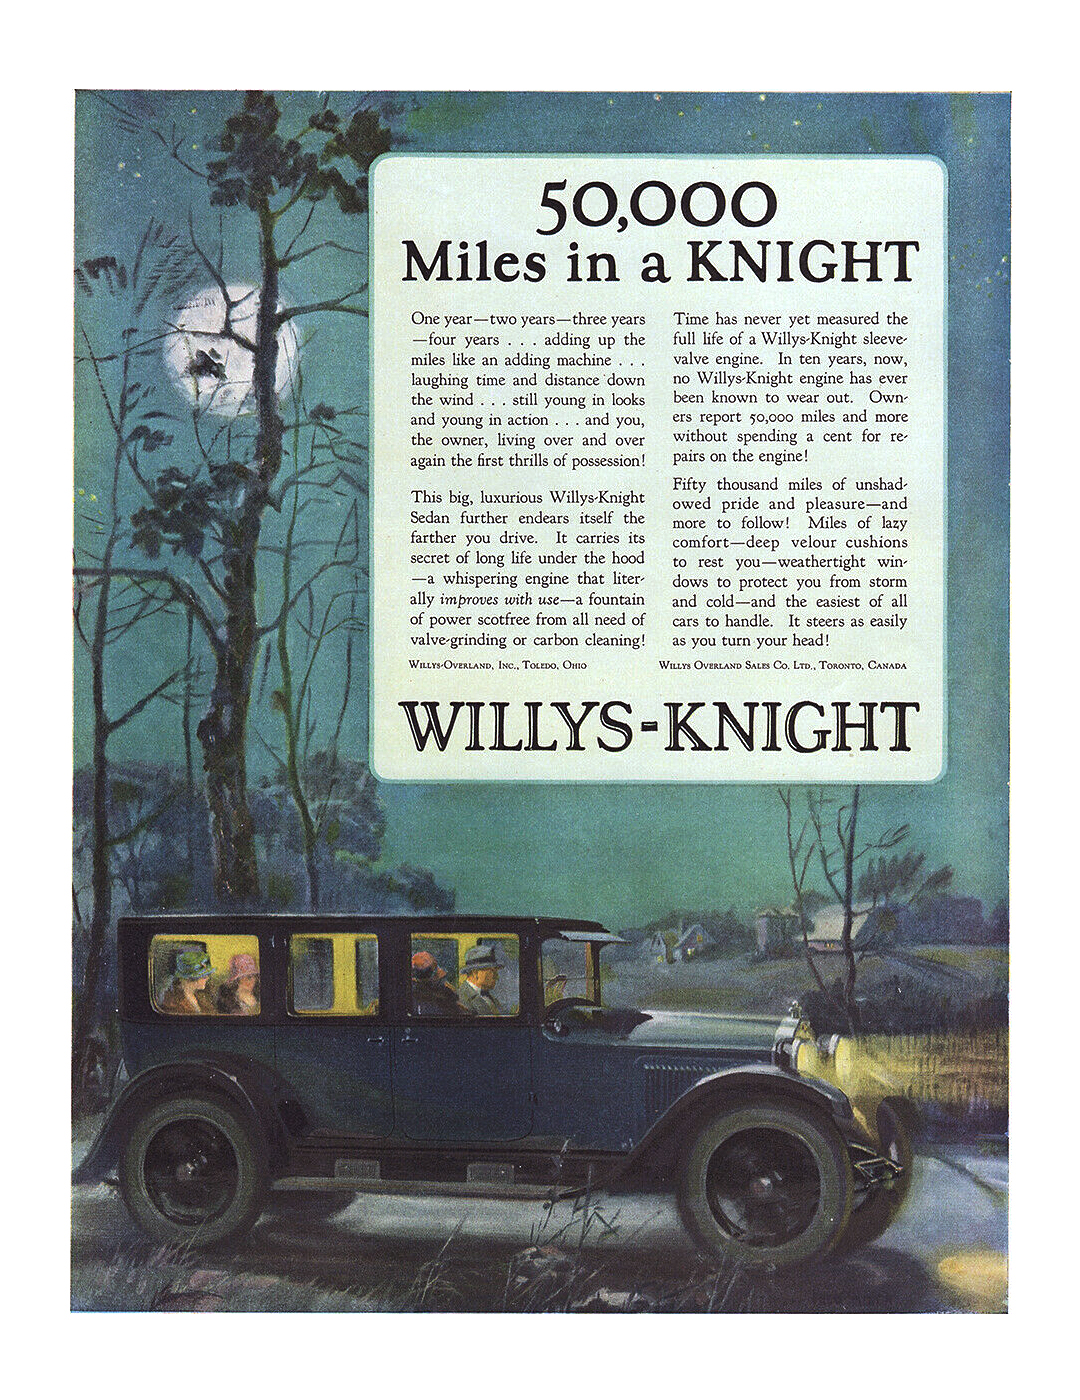 Willys-Knight Sedan Ad (October, 1924) – 50,000 Miles in a Knight